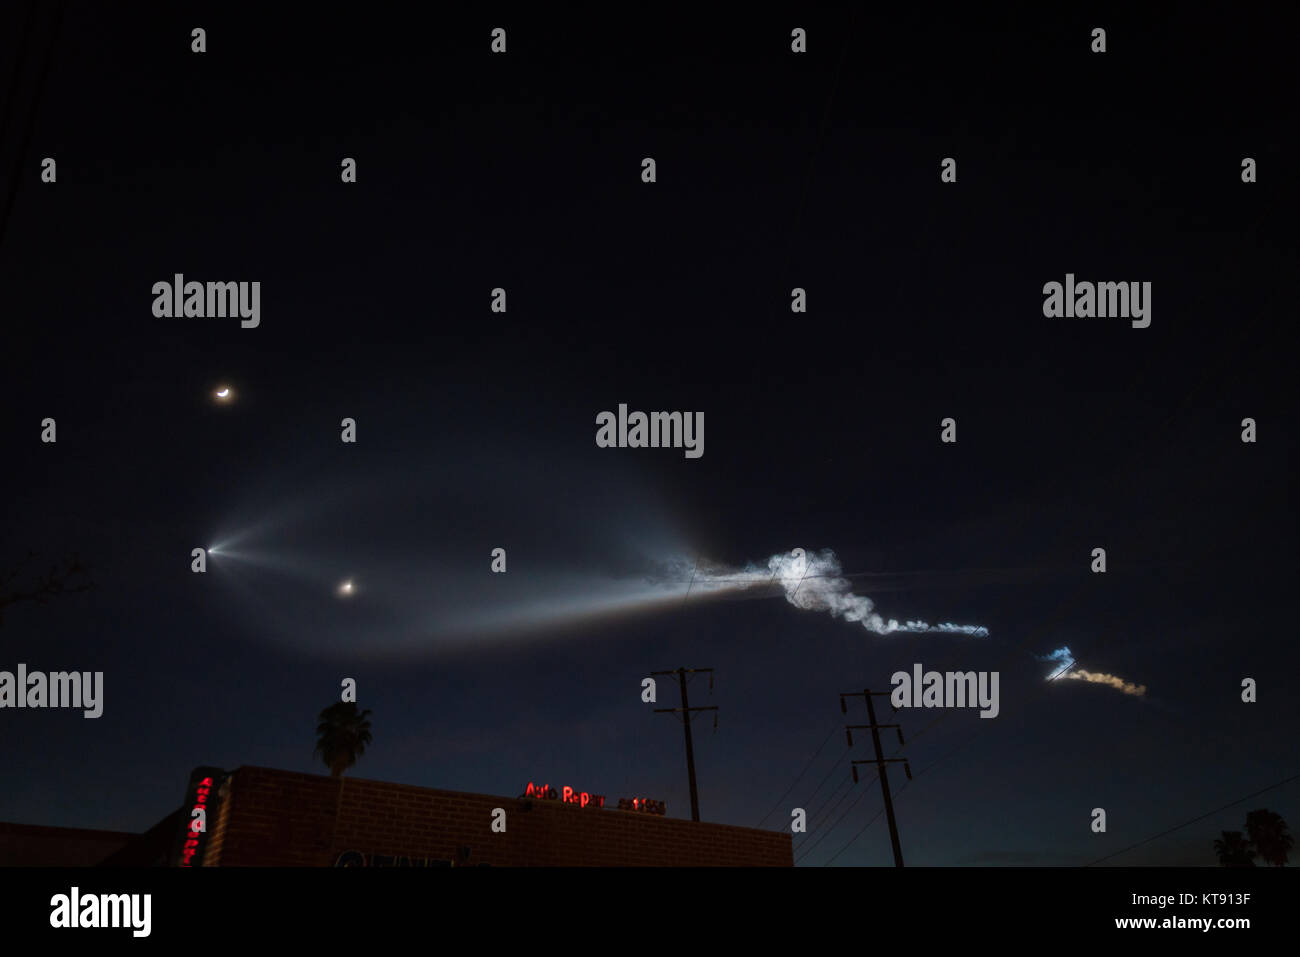 Lanzamiento del cohete SpaceX Falcon 9 estelas de condensación, visto desde la tierra en East Los Angeles, California, el 22 de diciembre de 2017 Crédito: Jim Newberry/Alamy Live News Foto de stock